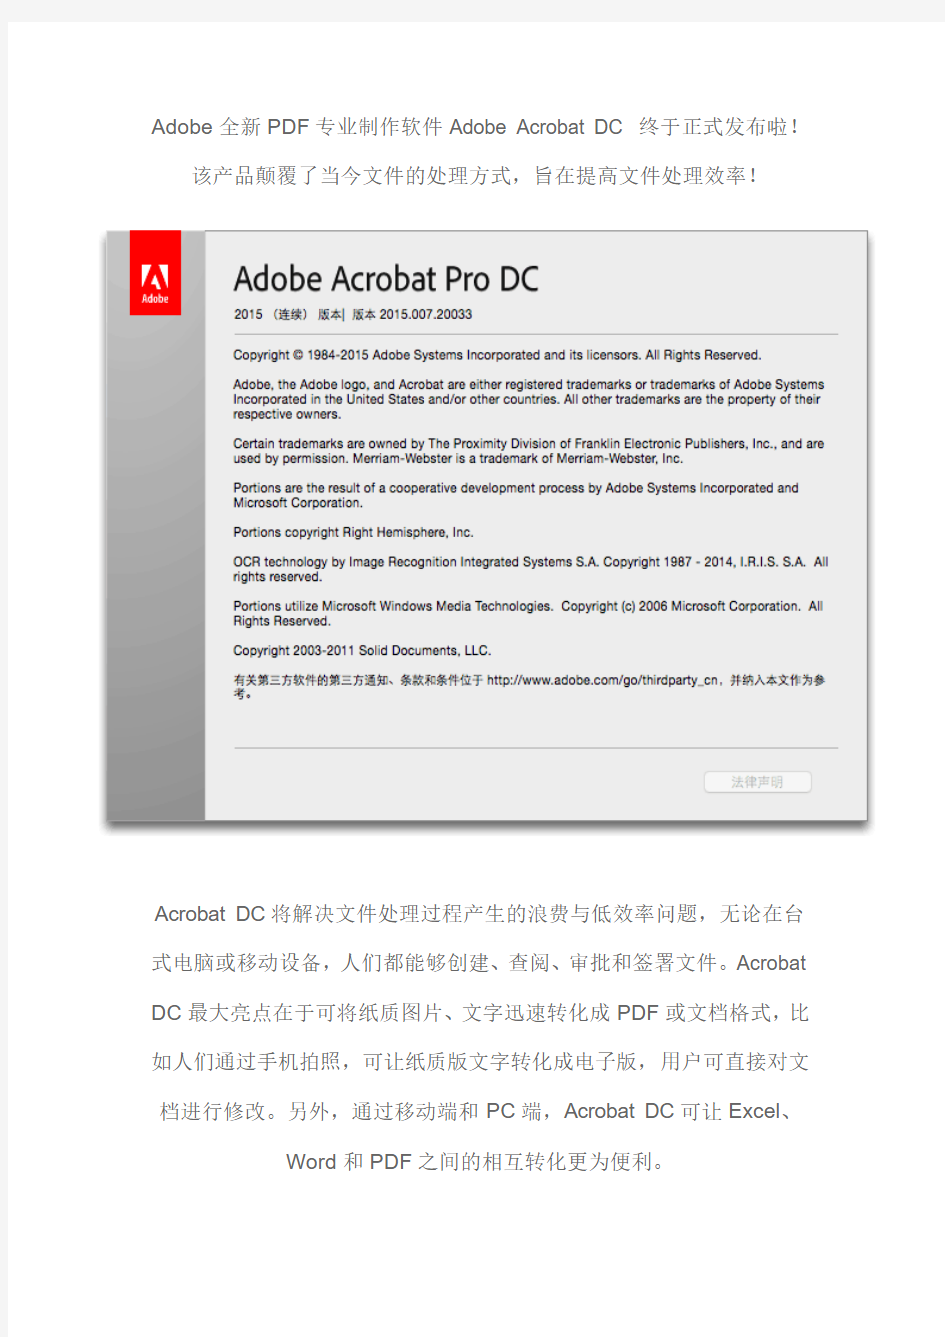 Adobe Acrobat Pro DC for Mac 2015 破解版 – Mac上强大的PDF编辑软件